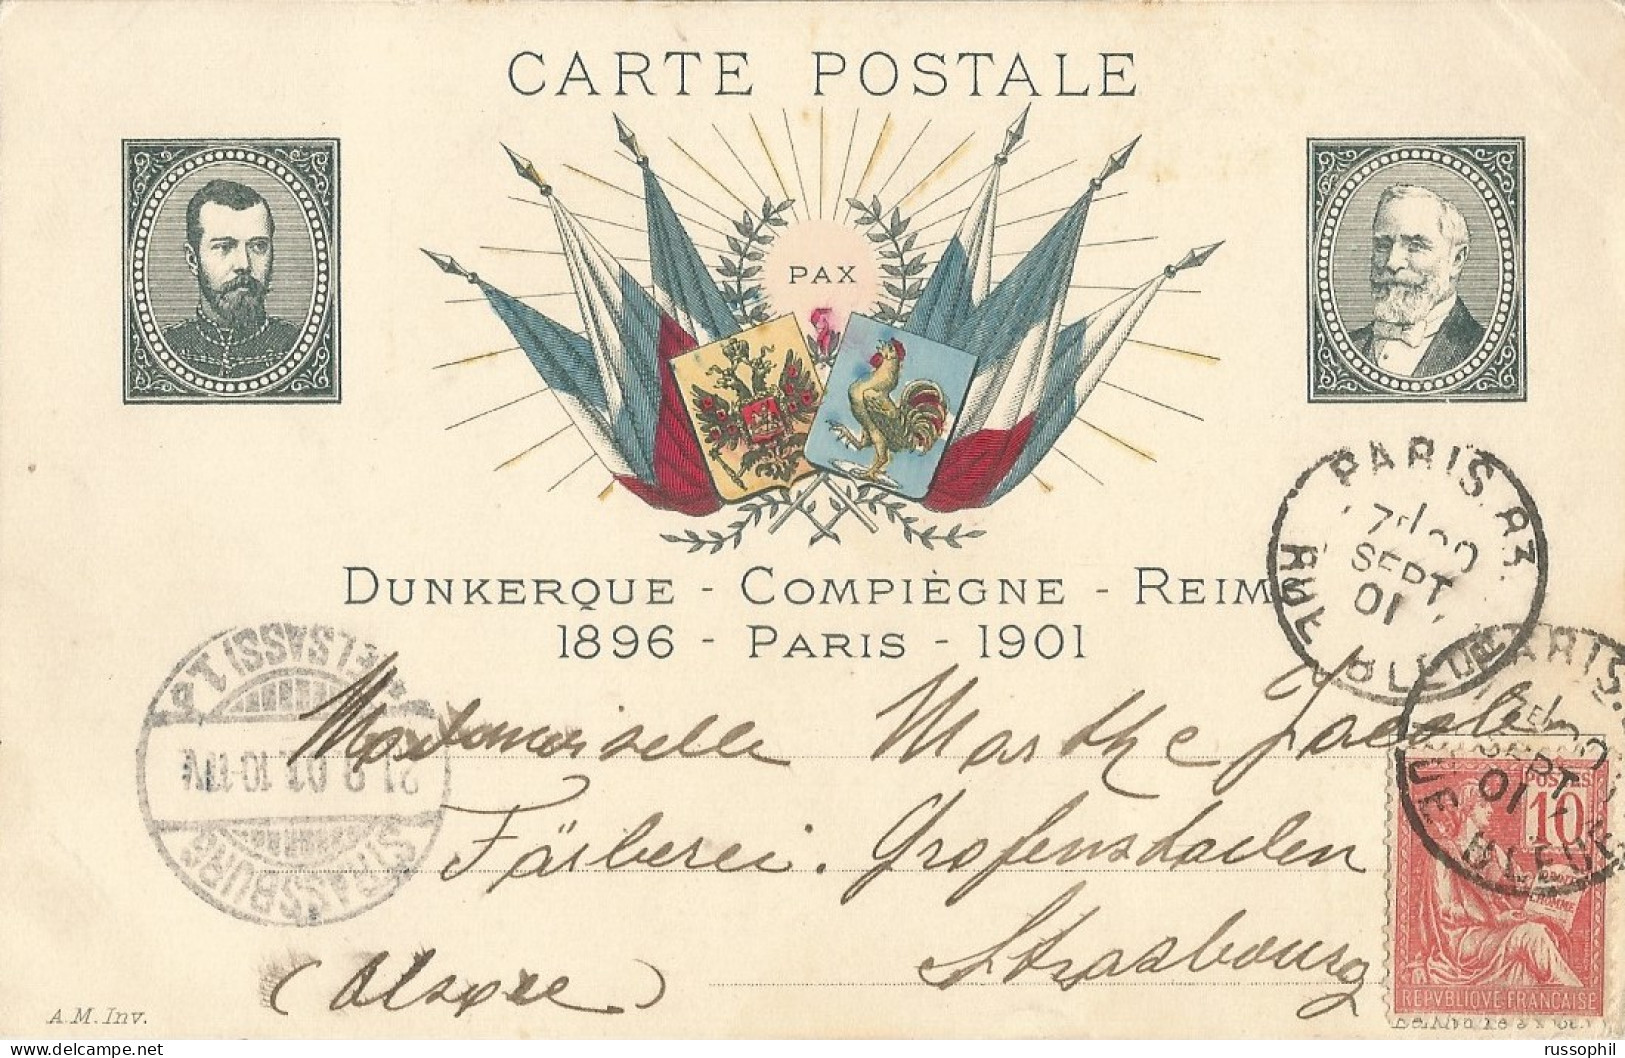 FRANCO RUSSIAN ALLIANCE - DUNKERQUE COMPIEGNE REIMS - 1896 PARIS 1901  - ED BELLAVOINE - 1901 - Evènements